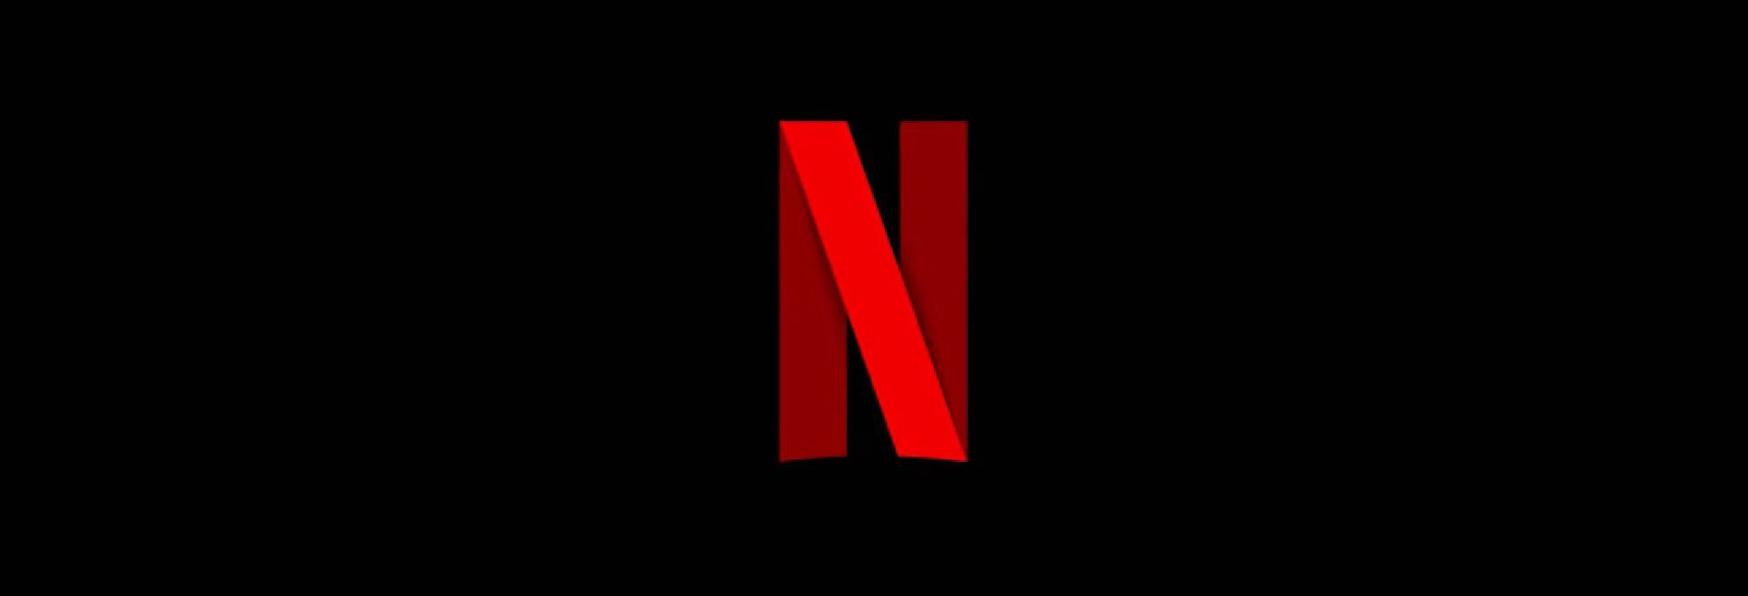 The Abandons: Gillian Anderson sarà nel Cast della Serie TV di Netflix